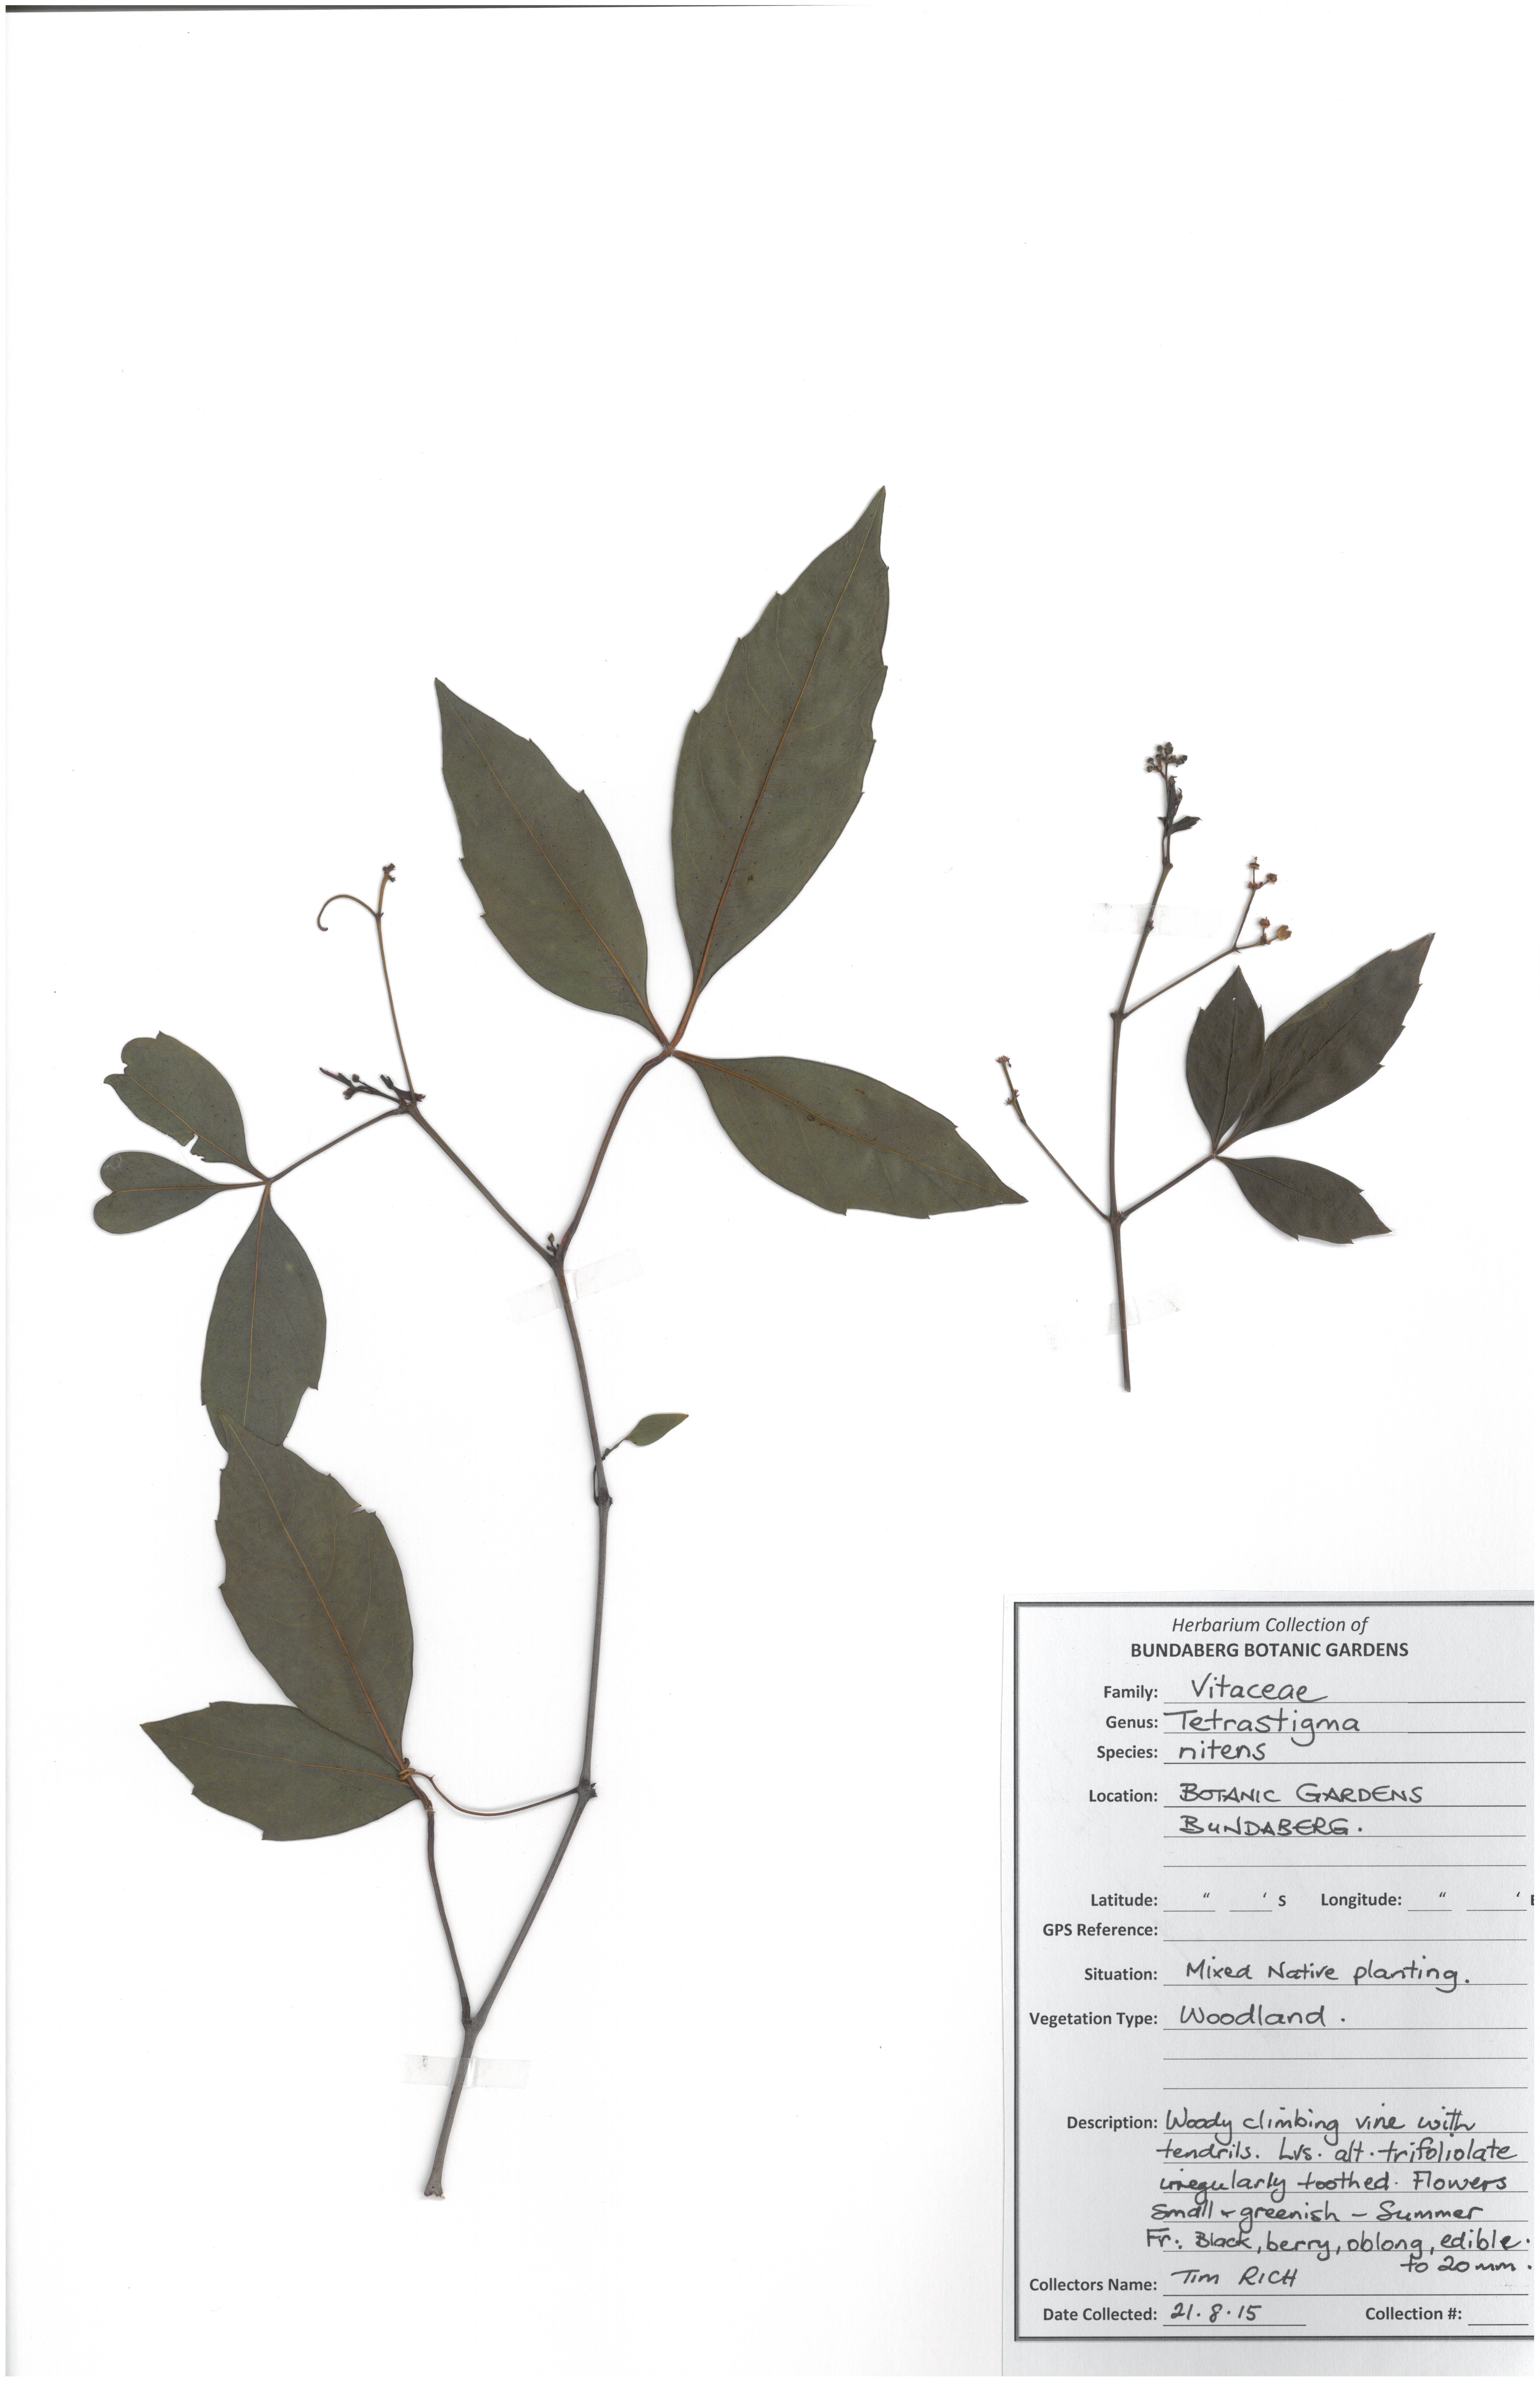 Vitaceae tetrastigma nitens